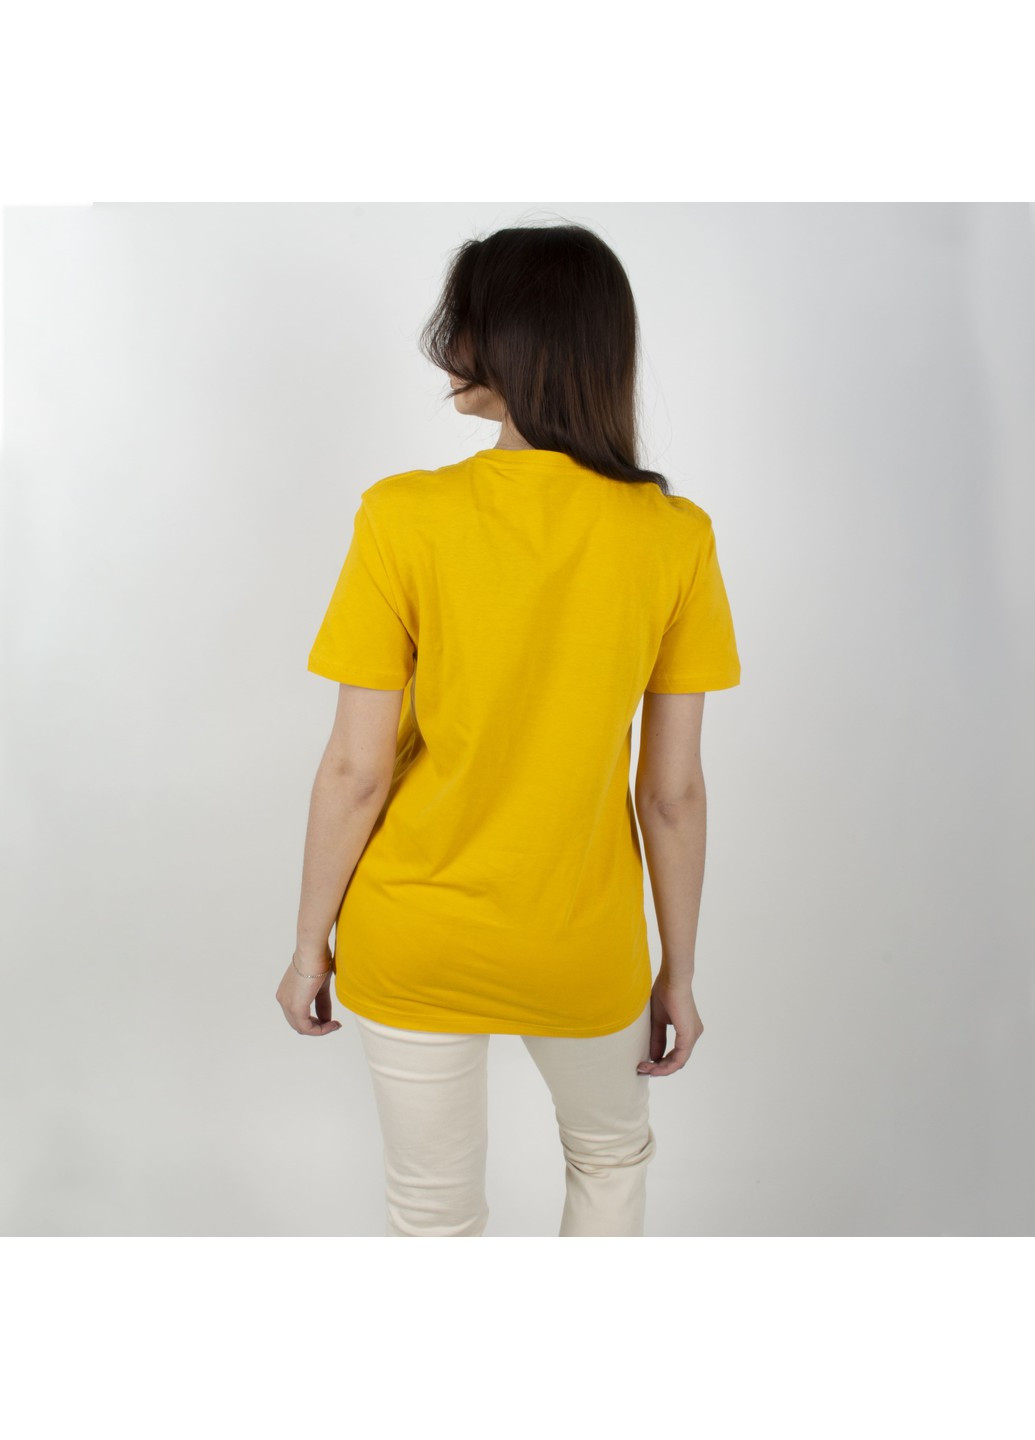 Желтая футболка Fine Look